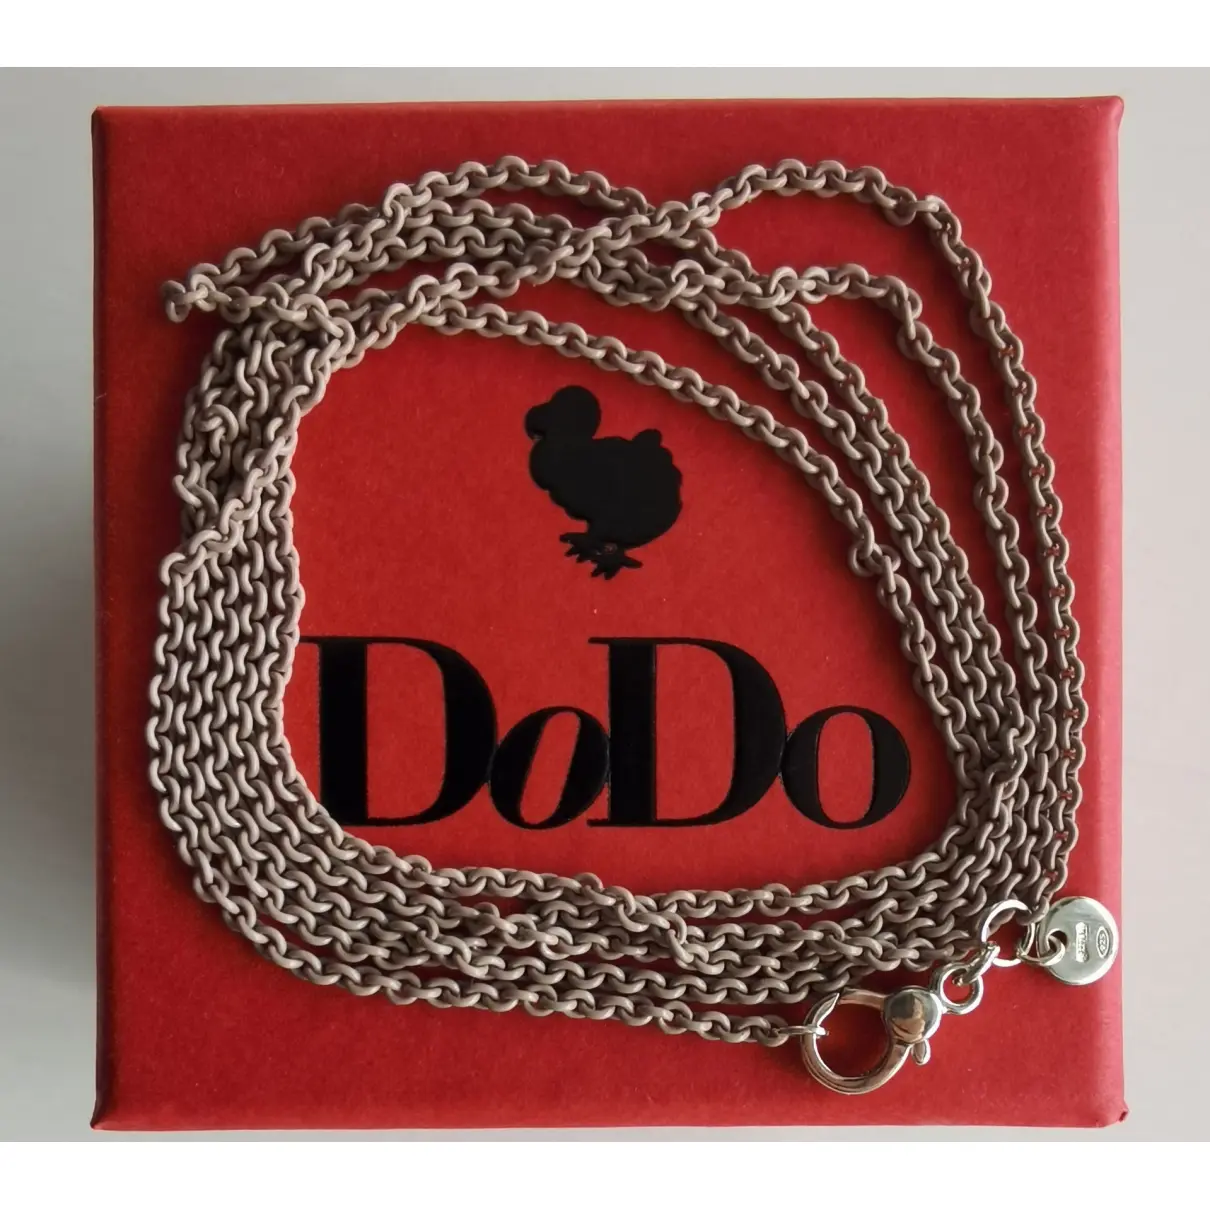 Buy Dodo Silver necklace online